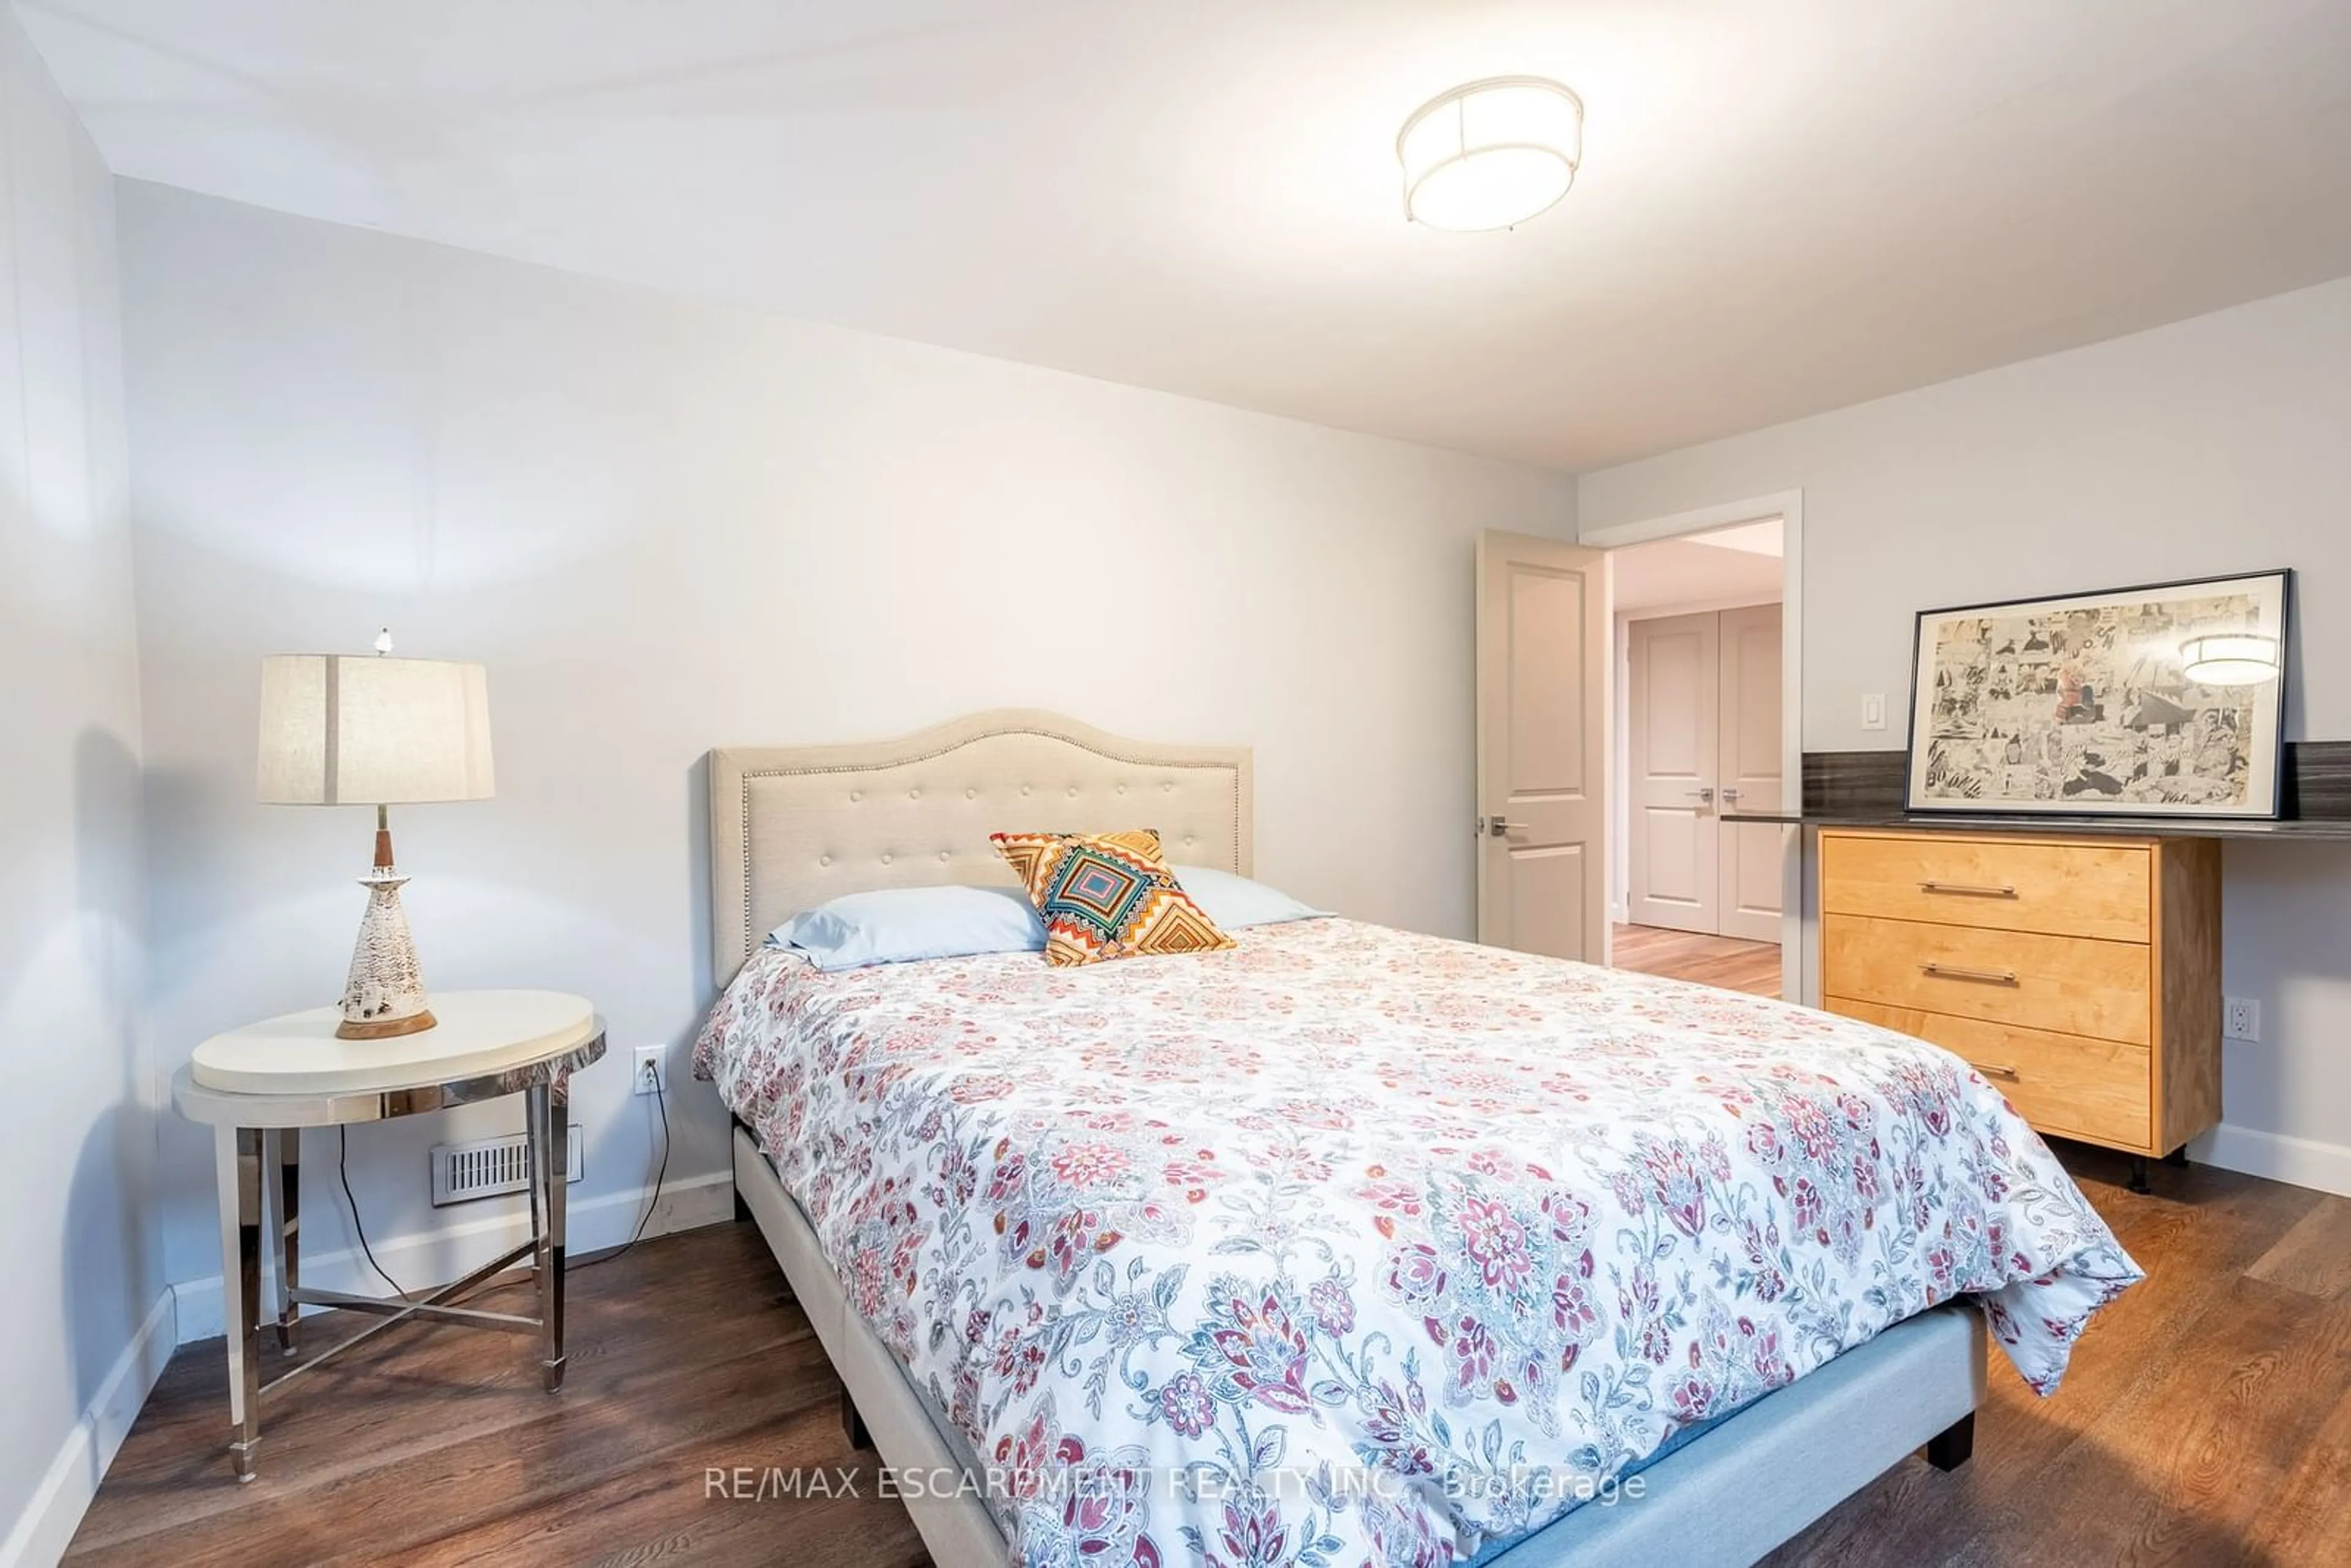 Bedroom for 4306 Lakeshore Rd, Burlington Ontario L5L 1A8